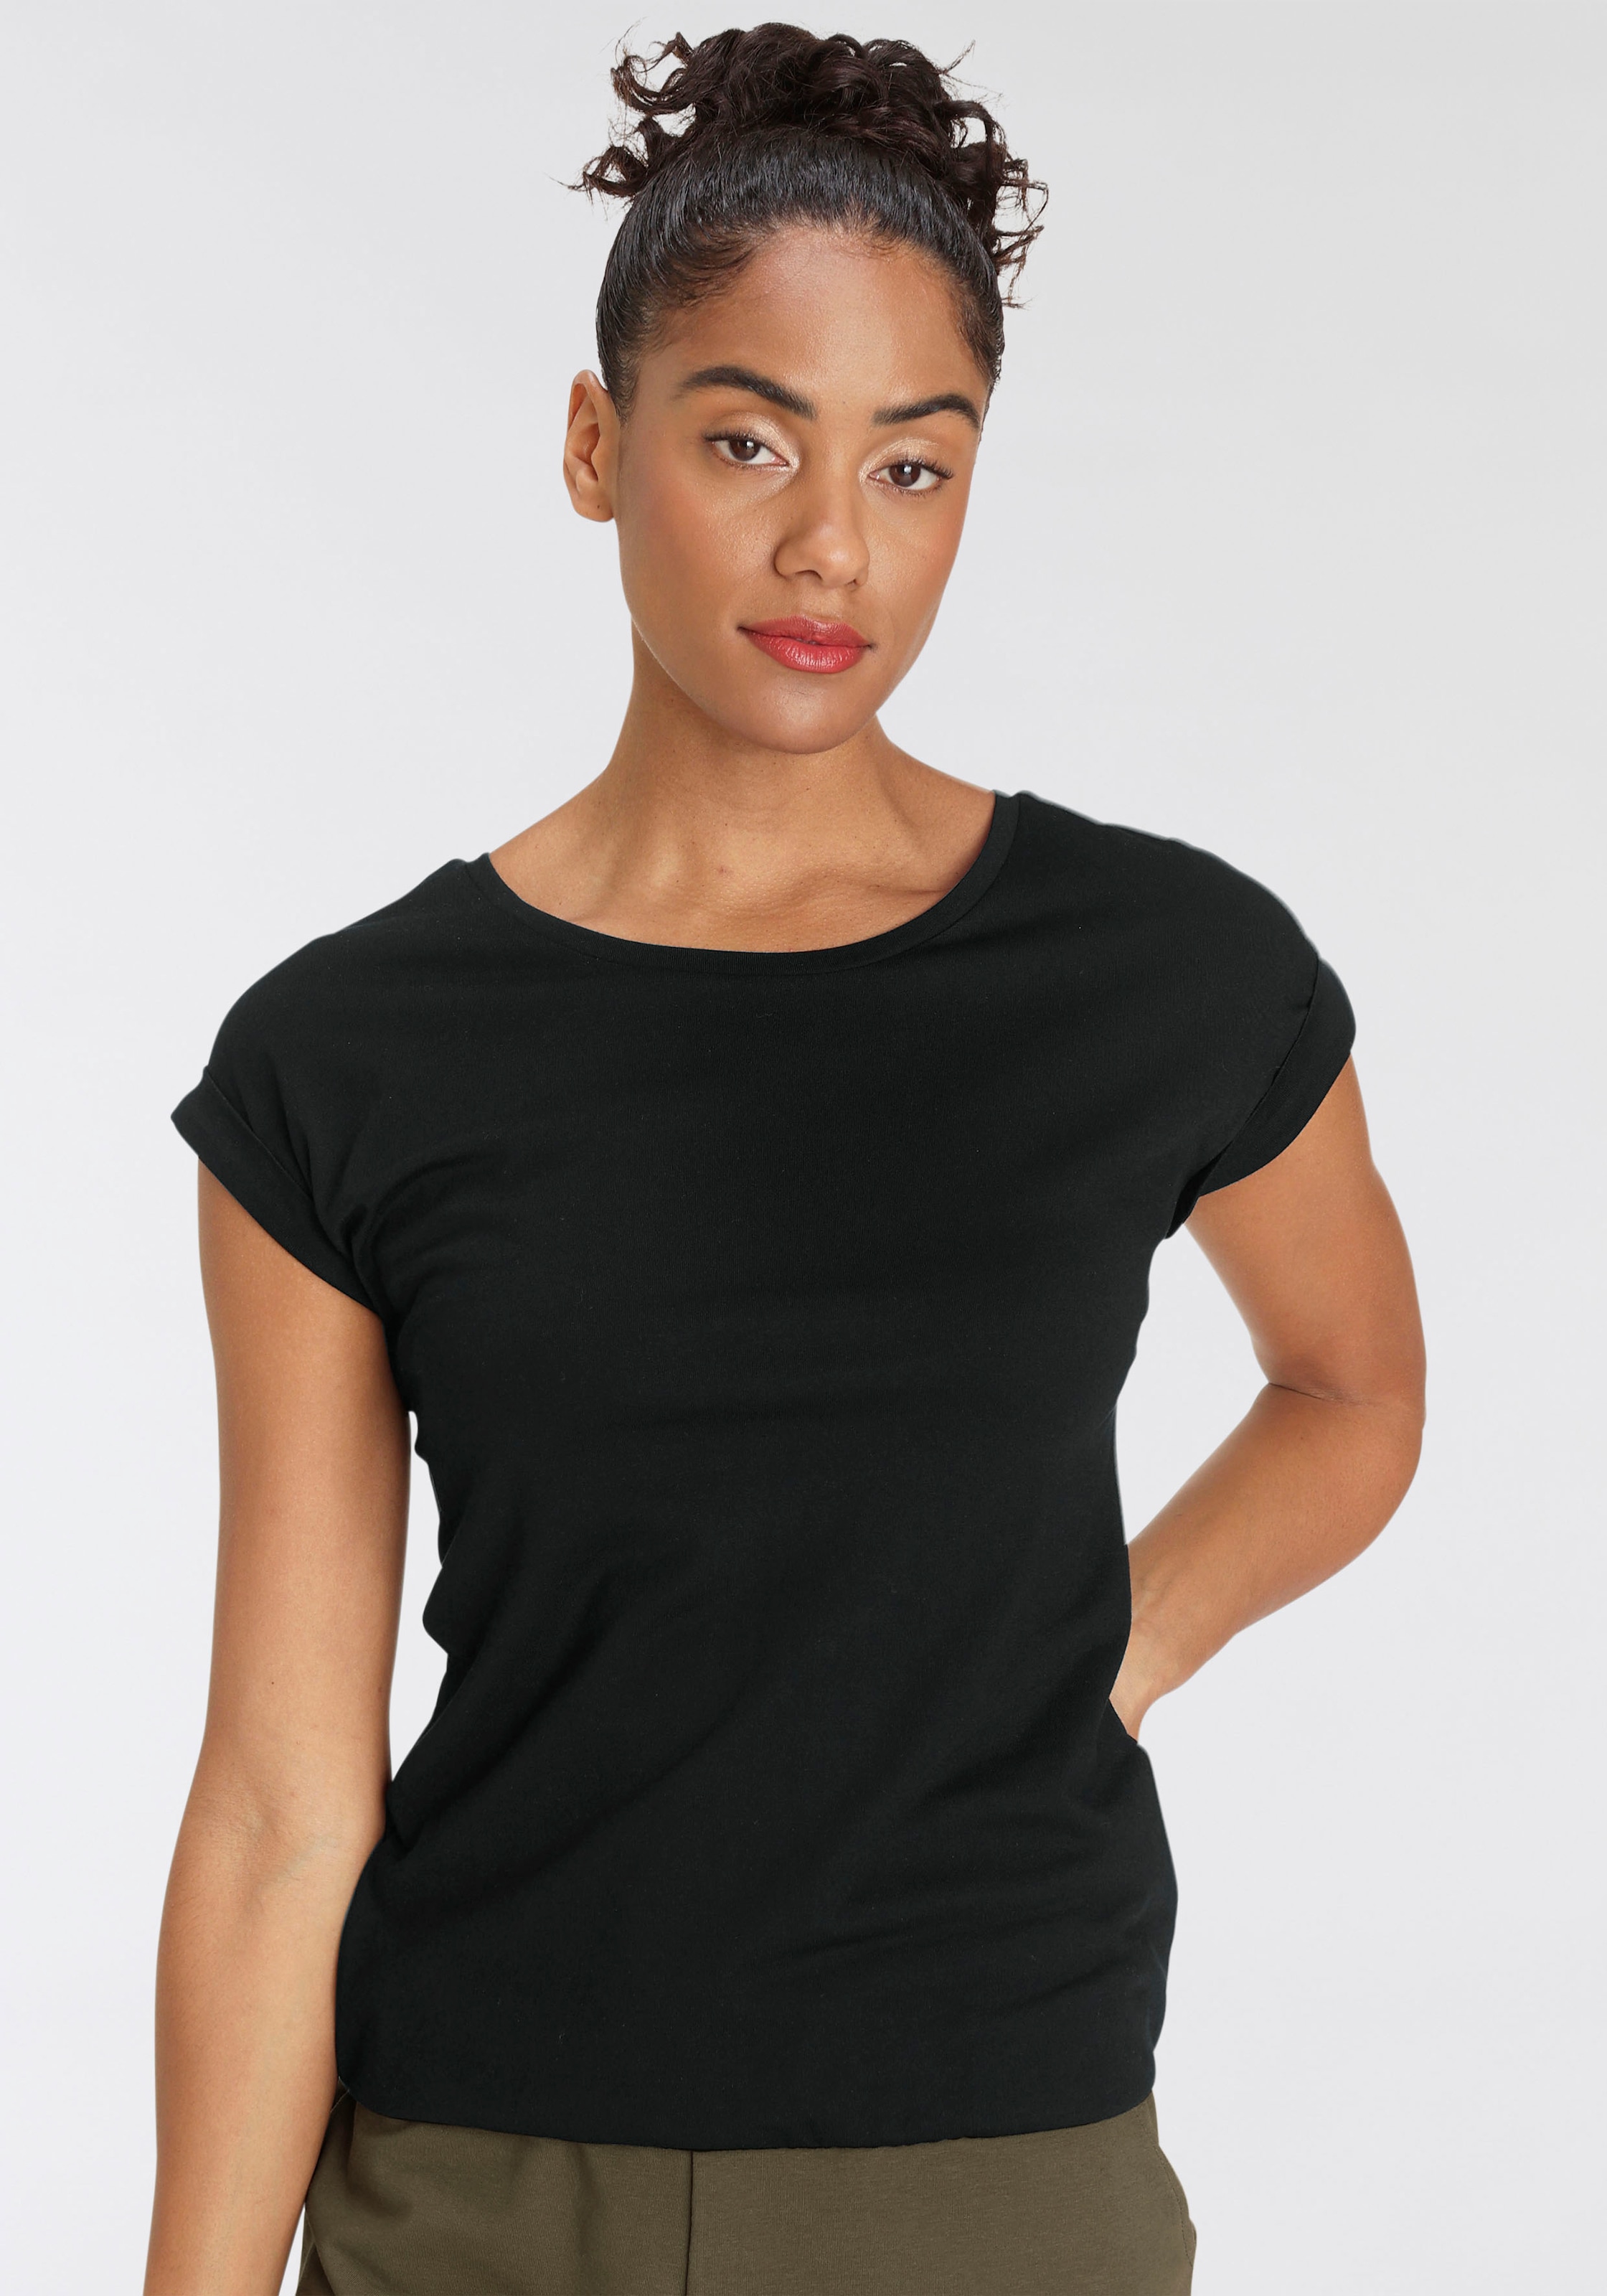 T-Shirt, mit überschnittenen Schultern & kleinem Ärmelaufschlag